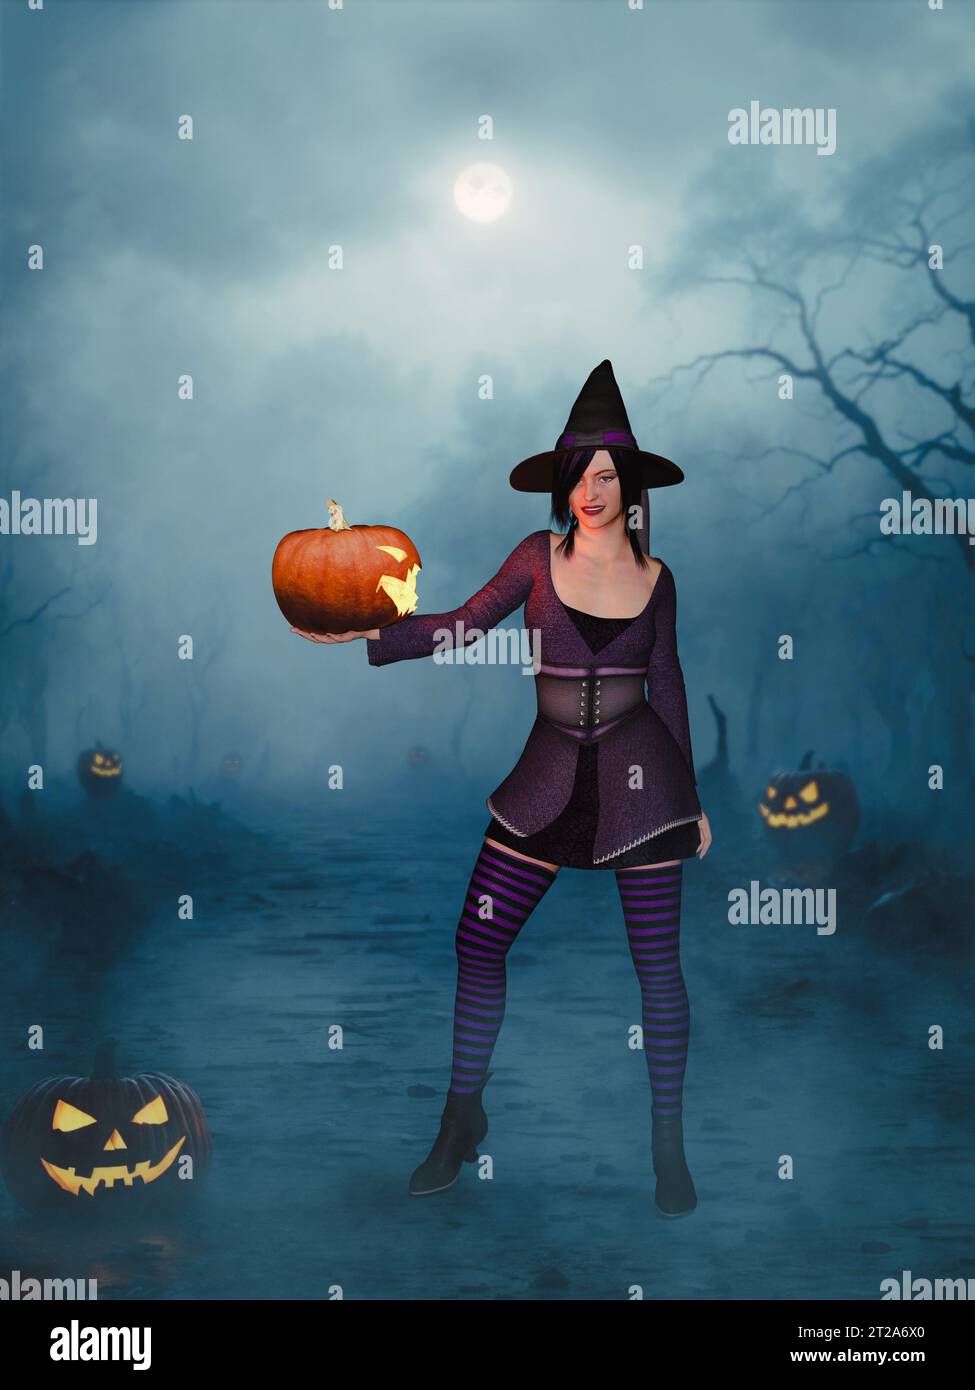 Rendu 3D d'une mignonne sorcière pin-up habillée d'un chapeau, robe violette et bas rayés tenant un jack-o'-lanterne sur une nuit effrayante. Banque D'Images